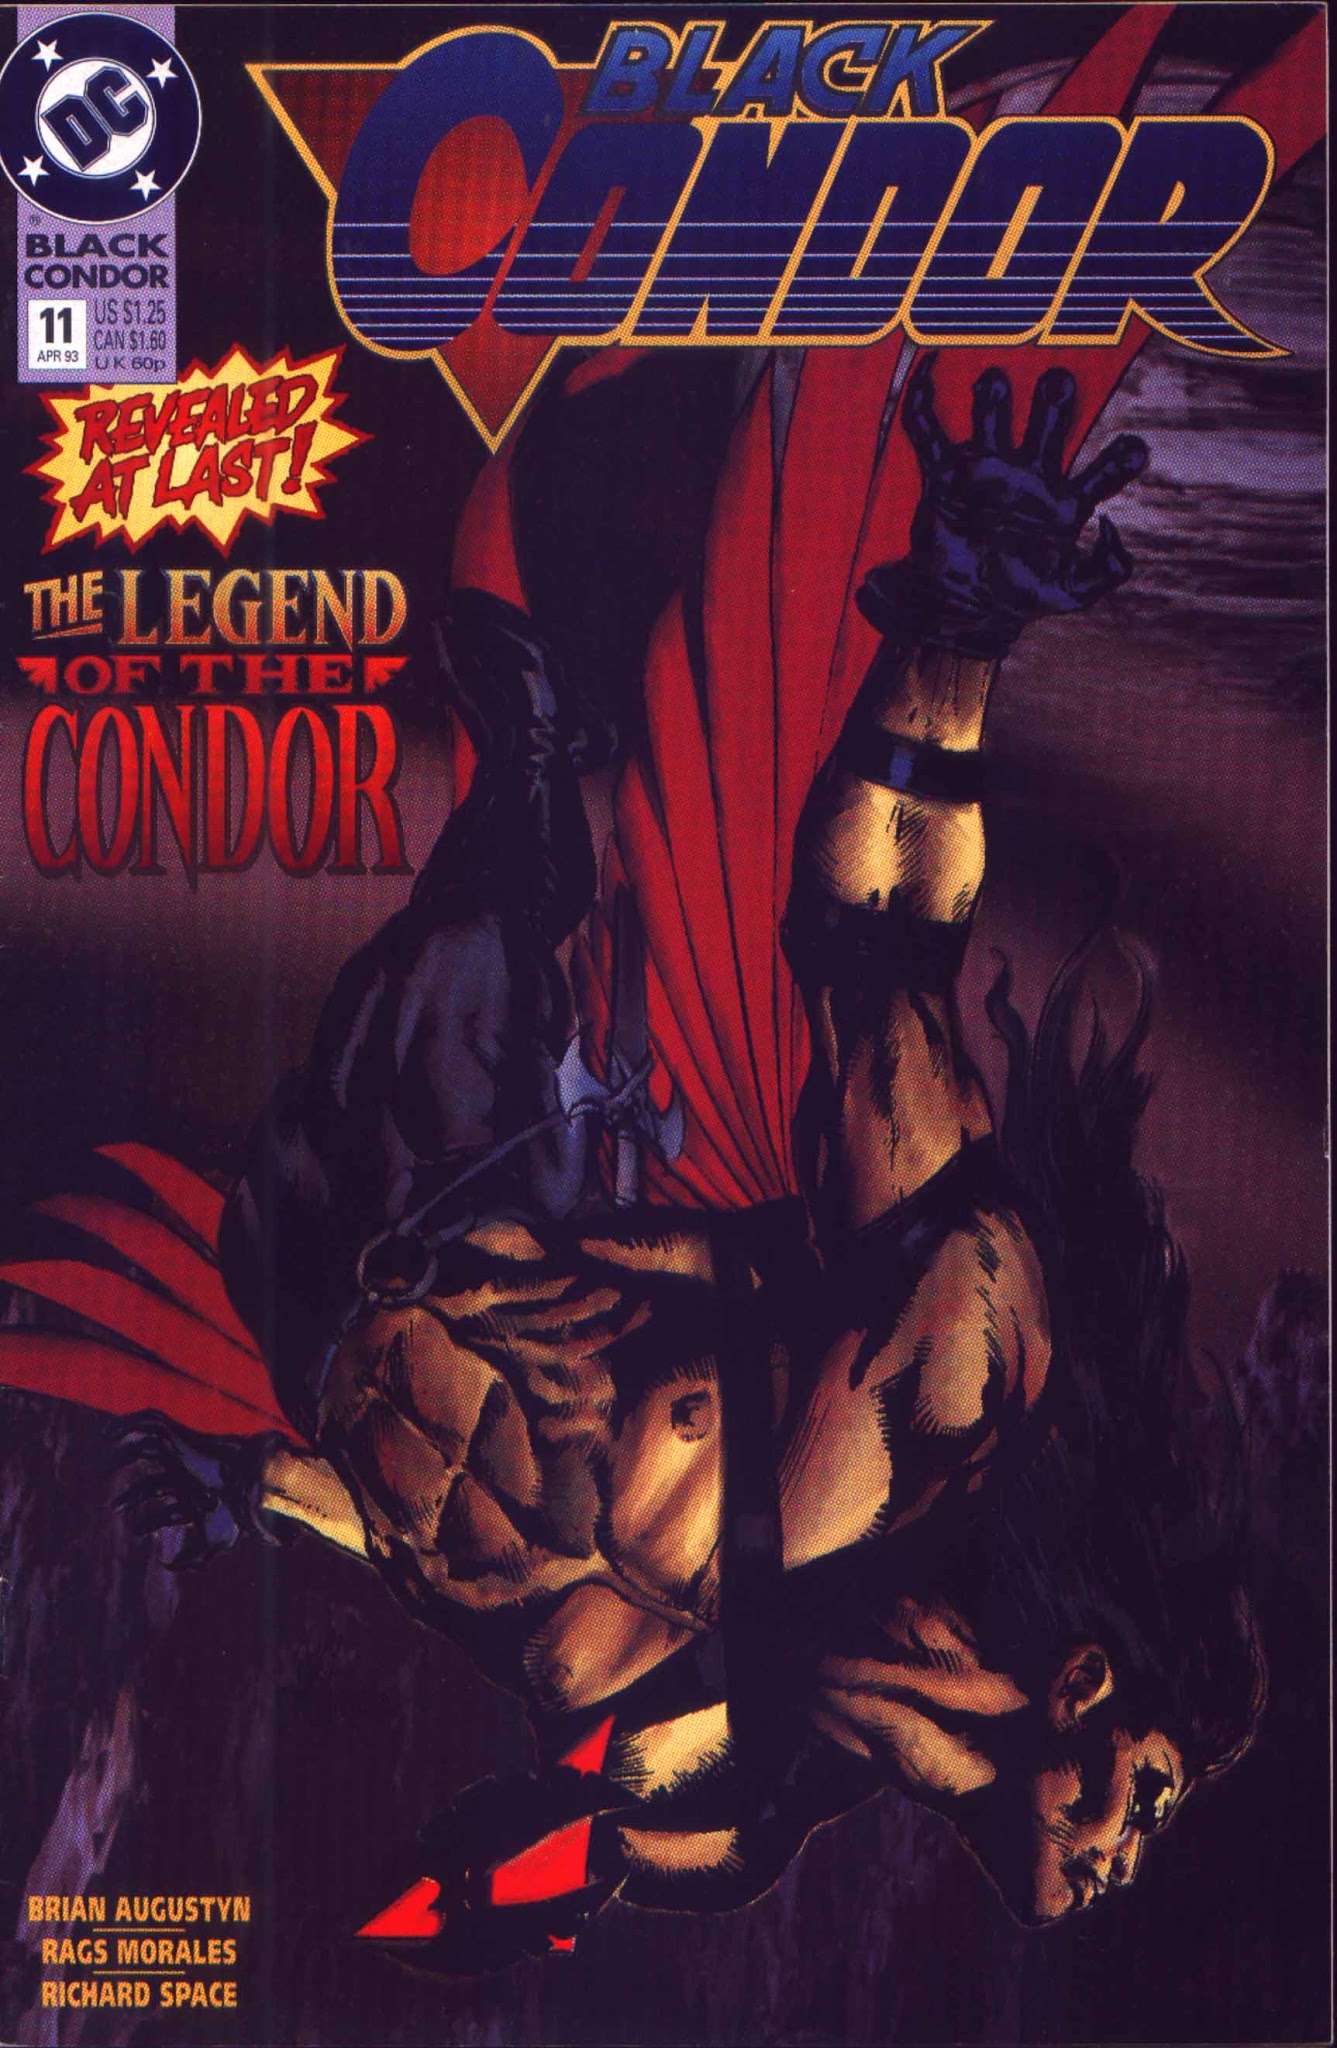 Read online Black Condor comic -  Issue #11 - 1